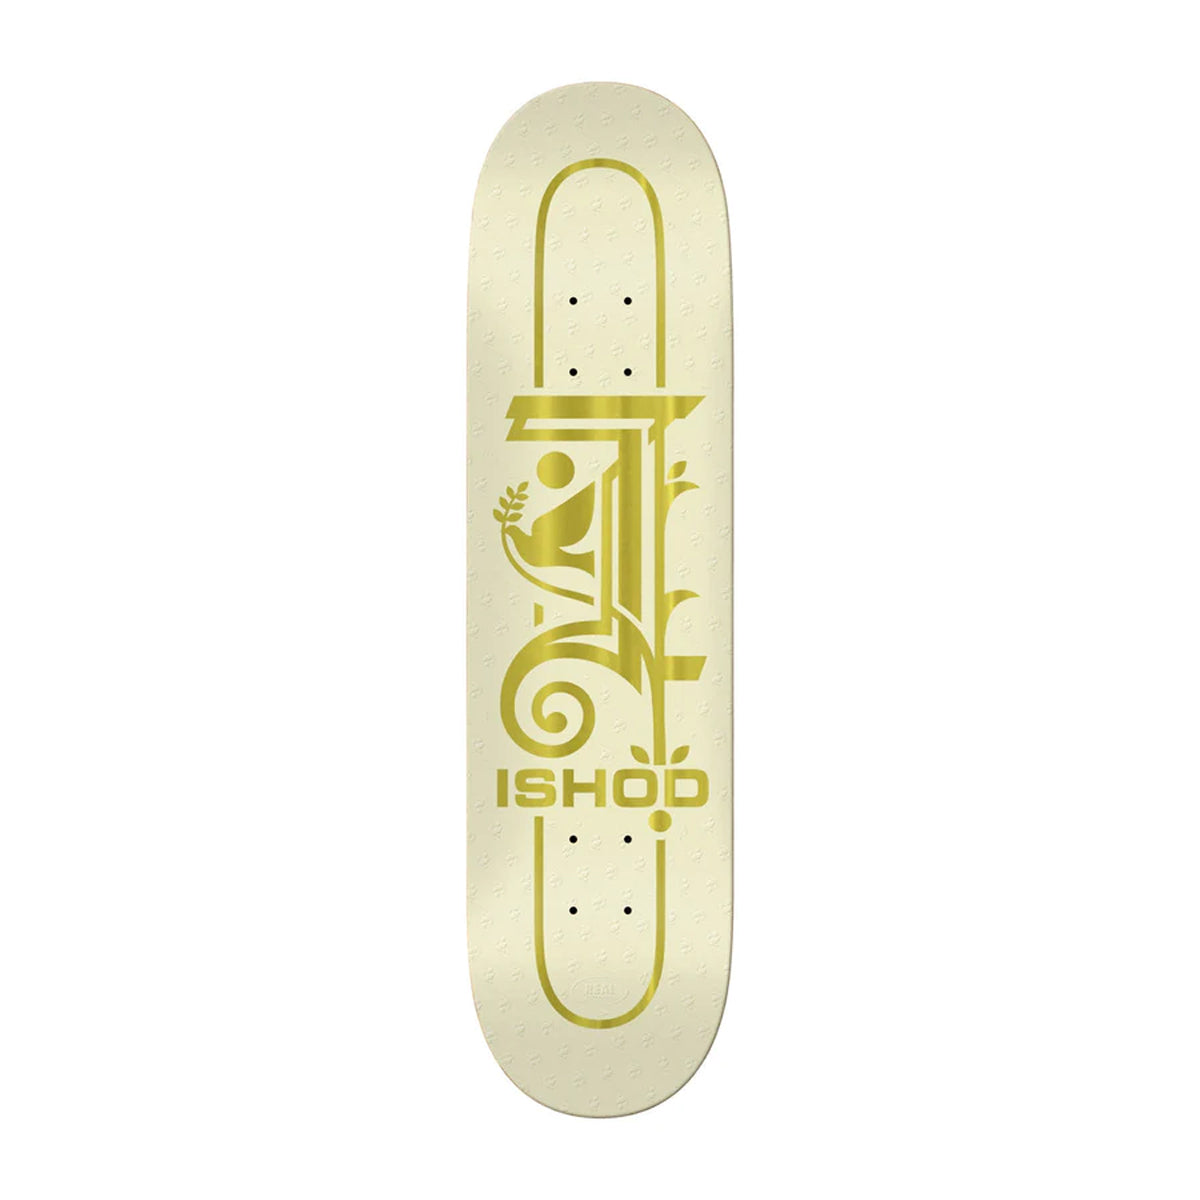 Real Ishod Wair Crest Skateboard Deck 8.25" - Apple Valley Emporium